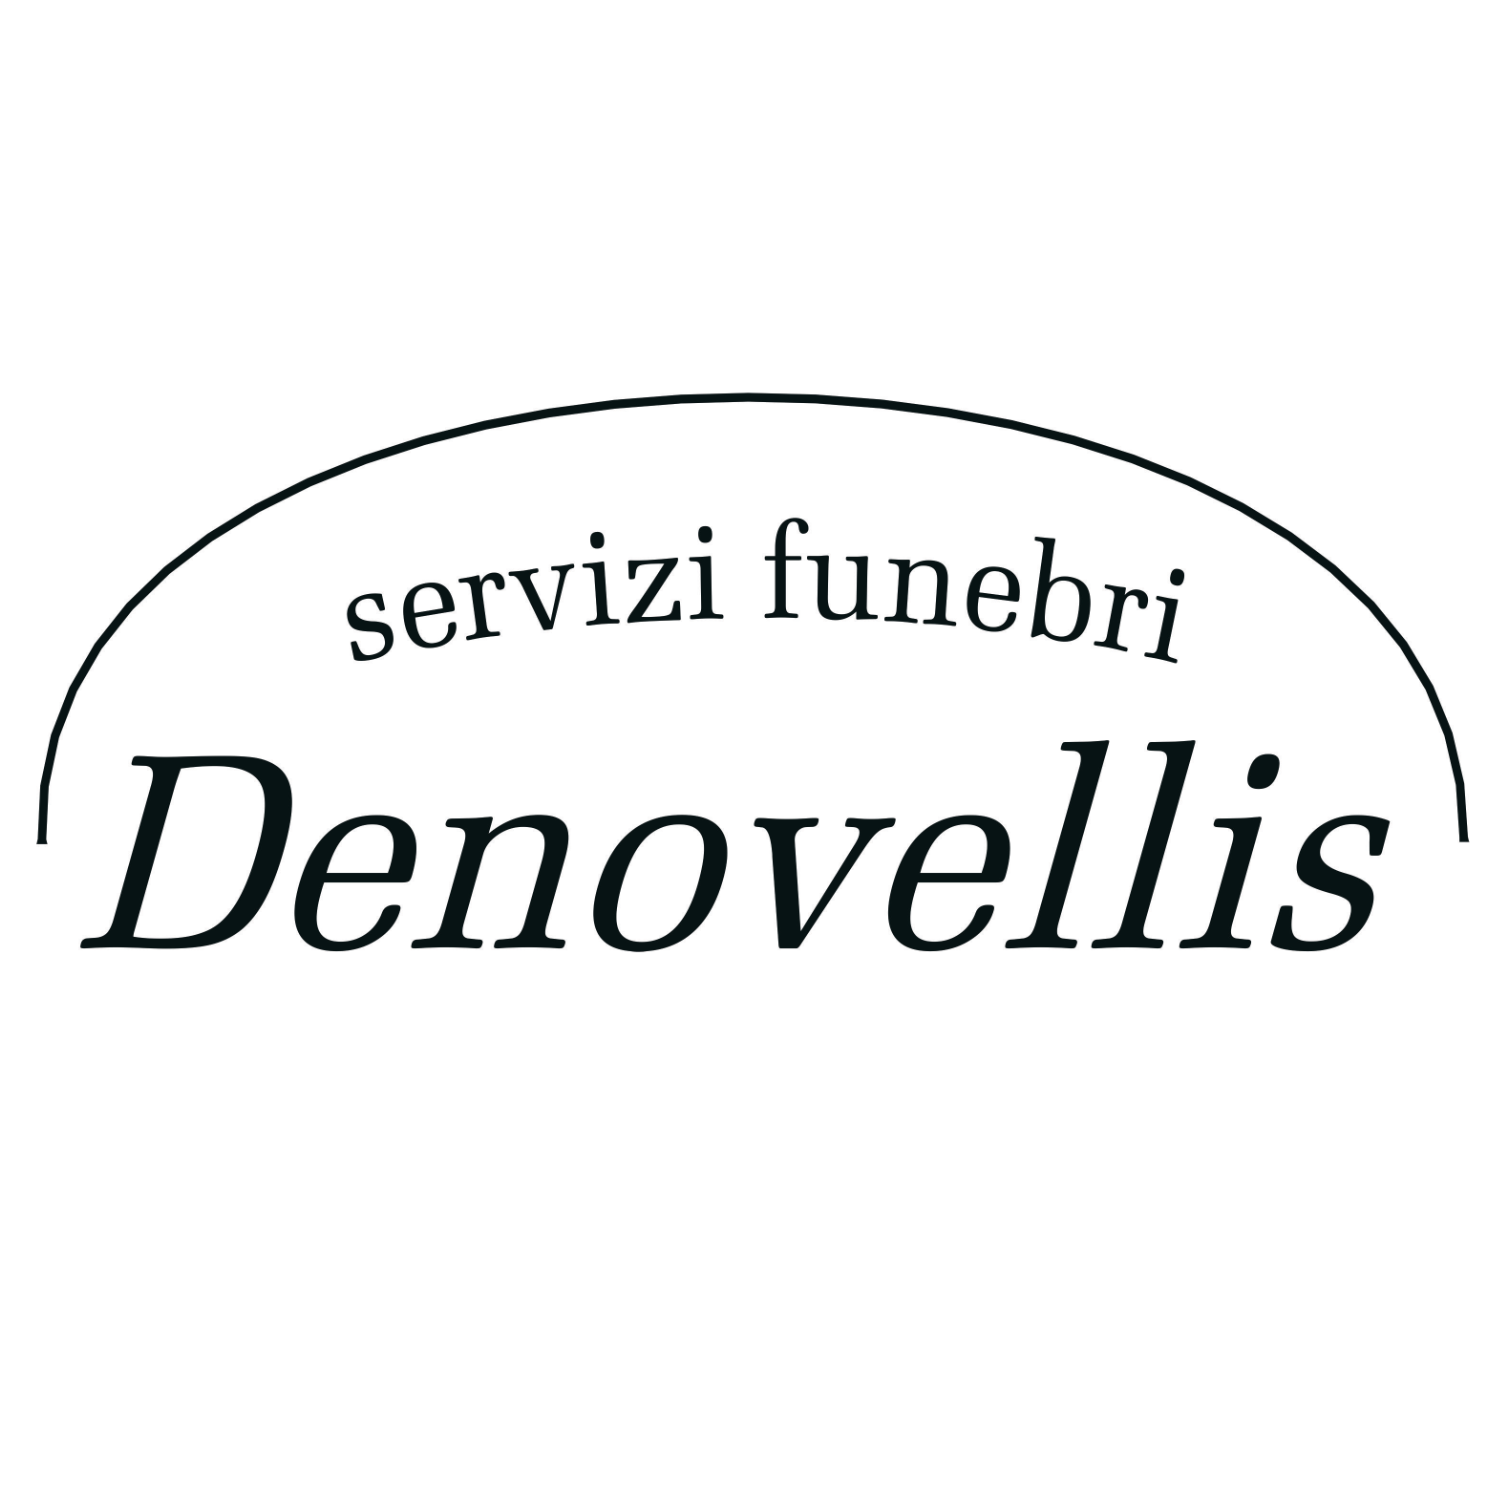 Servizi Funebri Denovellis